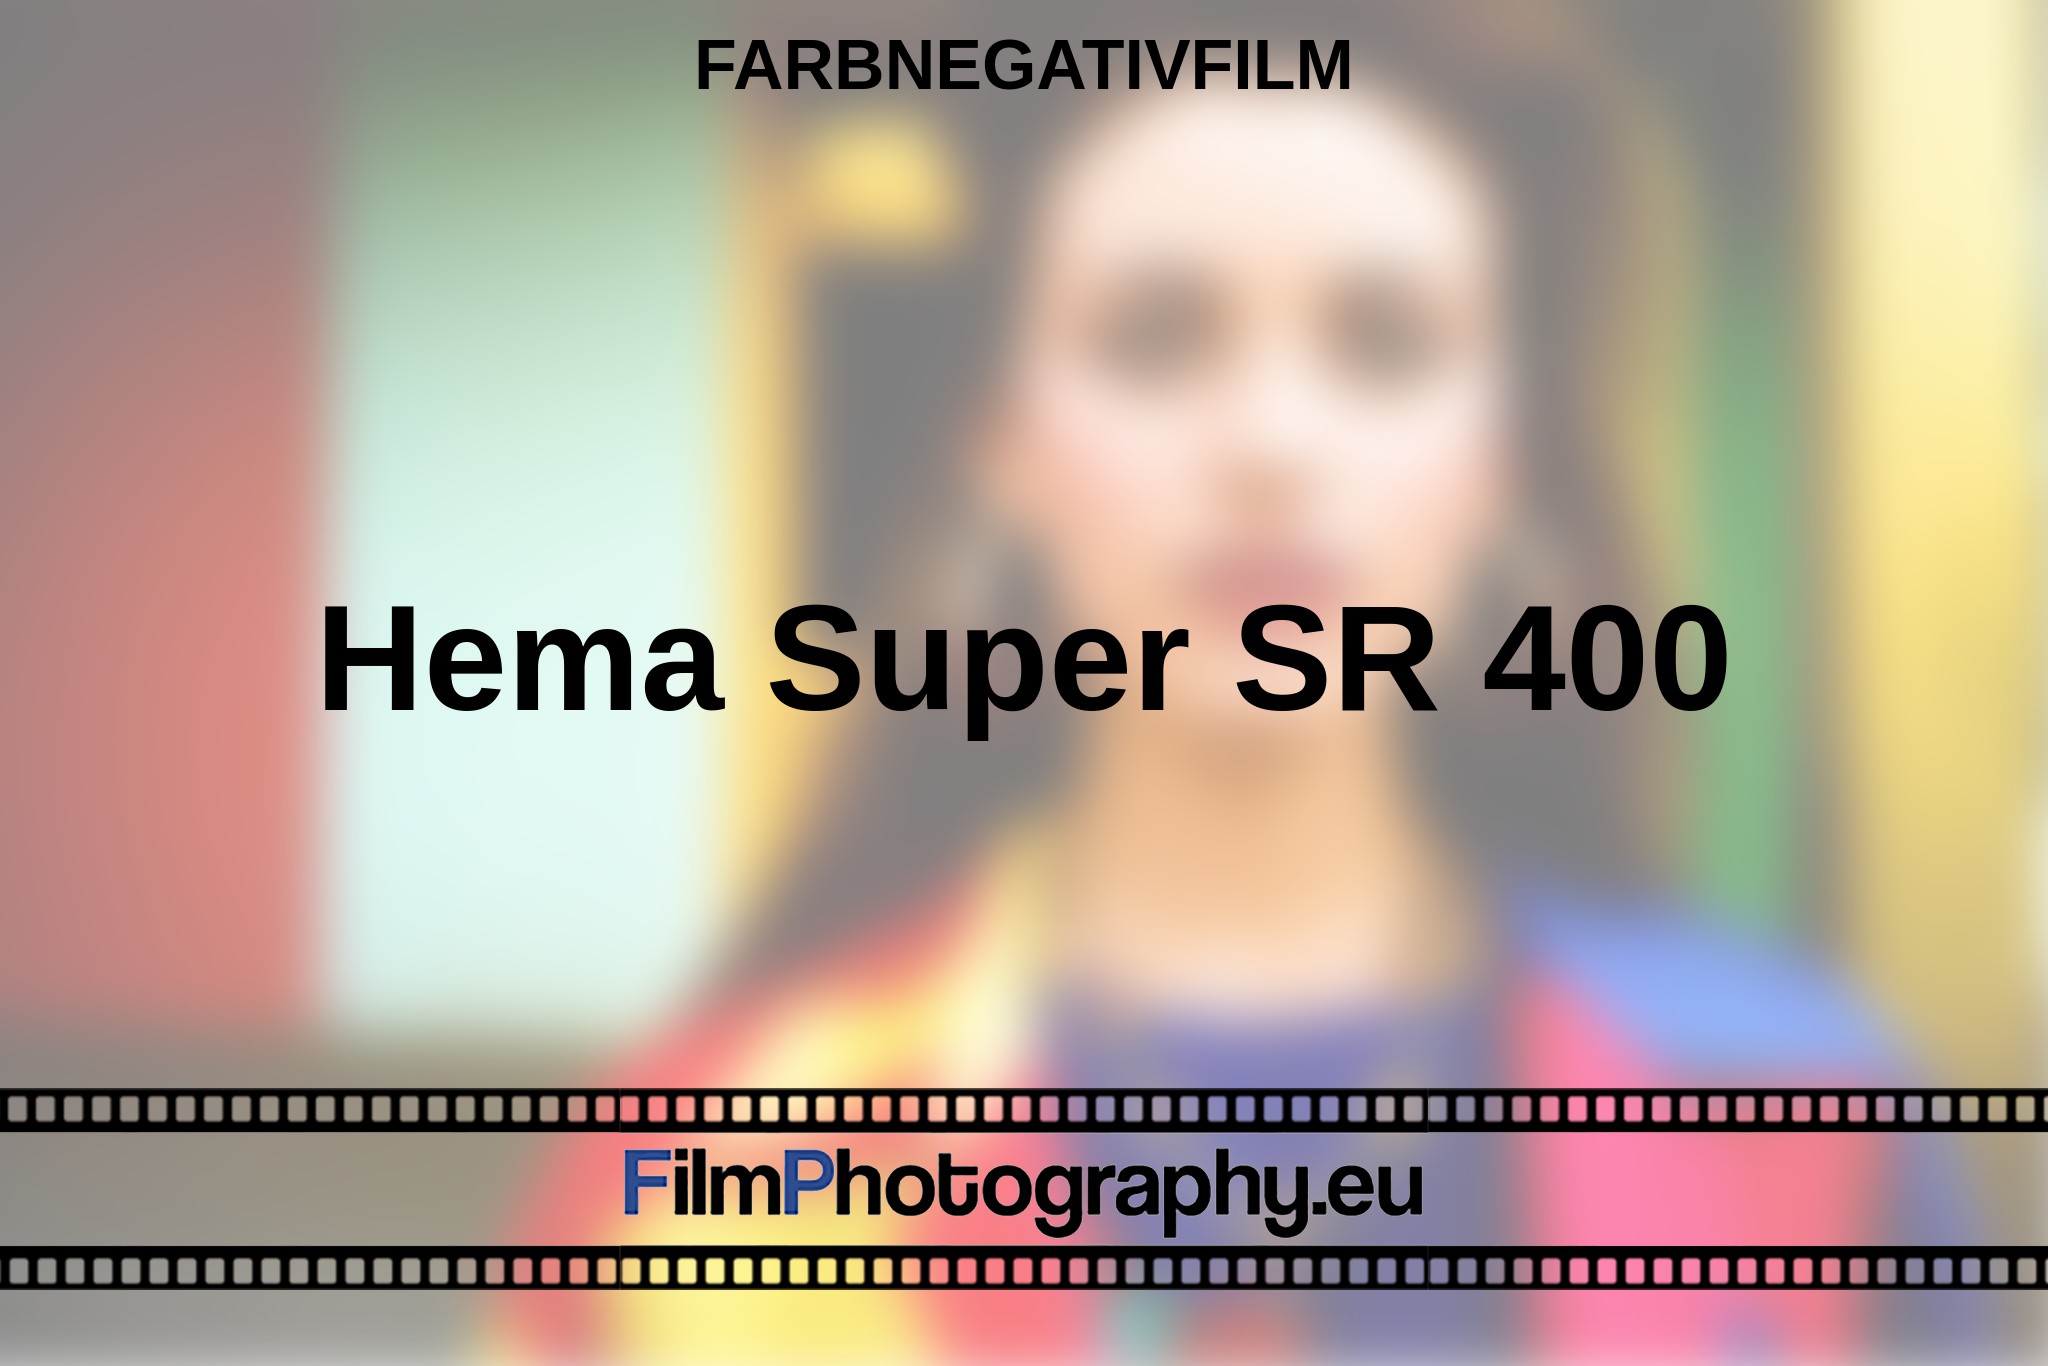 hema-super-sr-400-farbnegativfilm-bnv.jpg